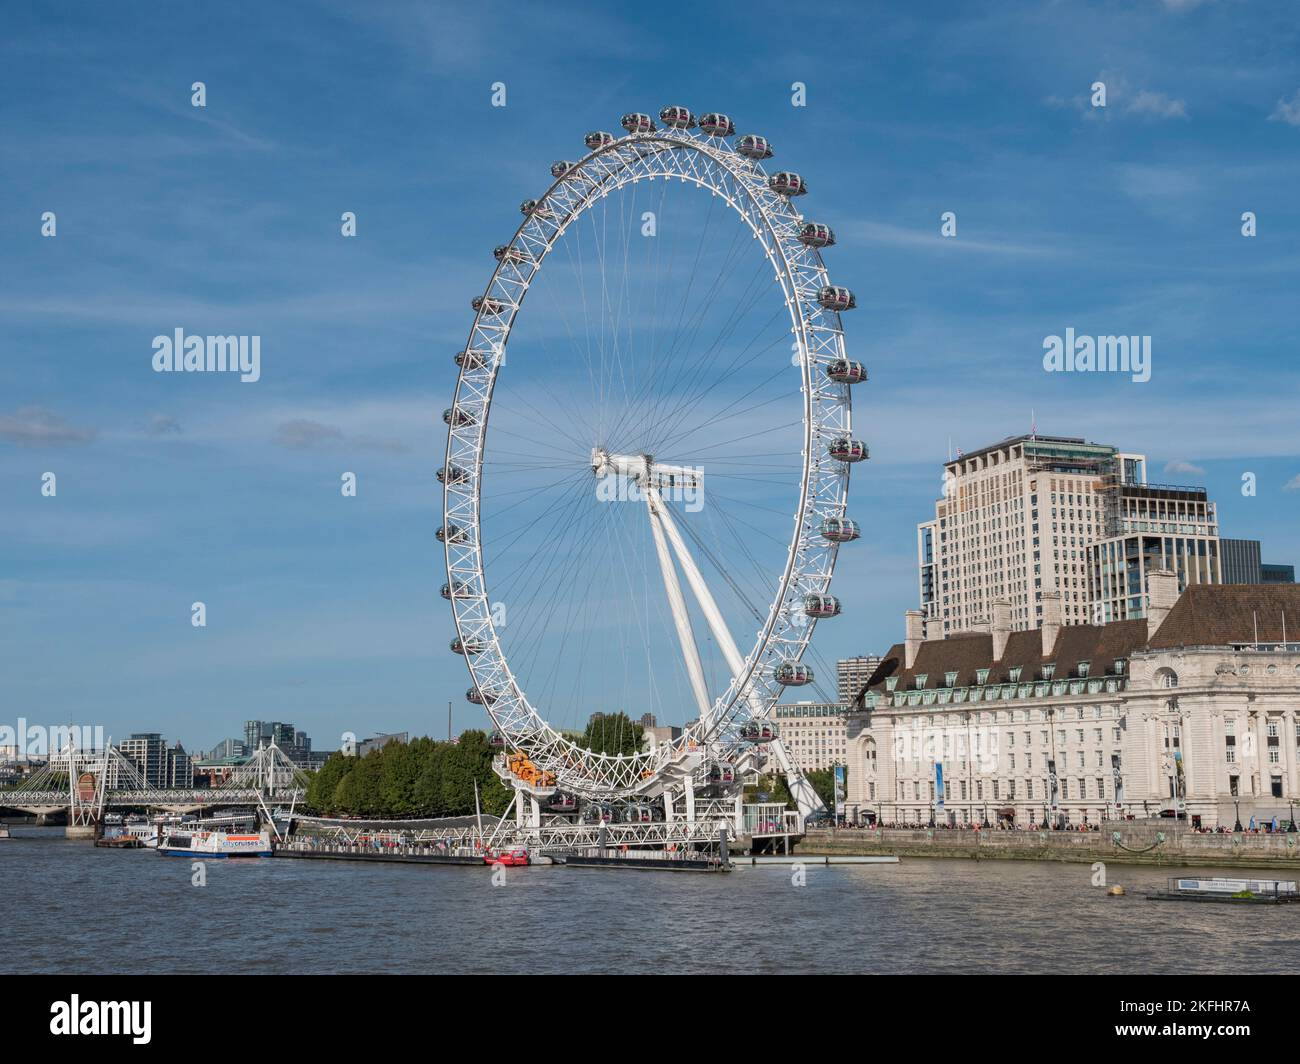 Londres más popular atracción turística, el London Eye, a orillas del río Támesis, Londres, Reino Unido. Foto de stock